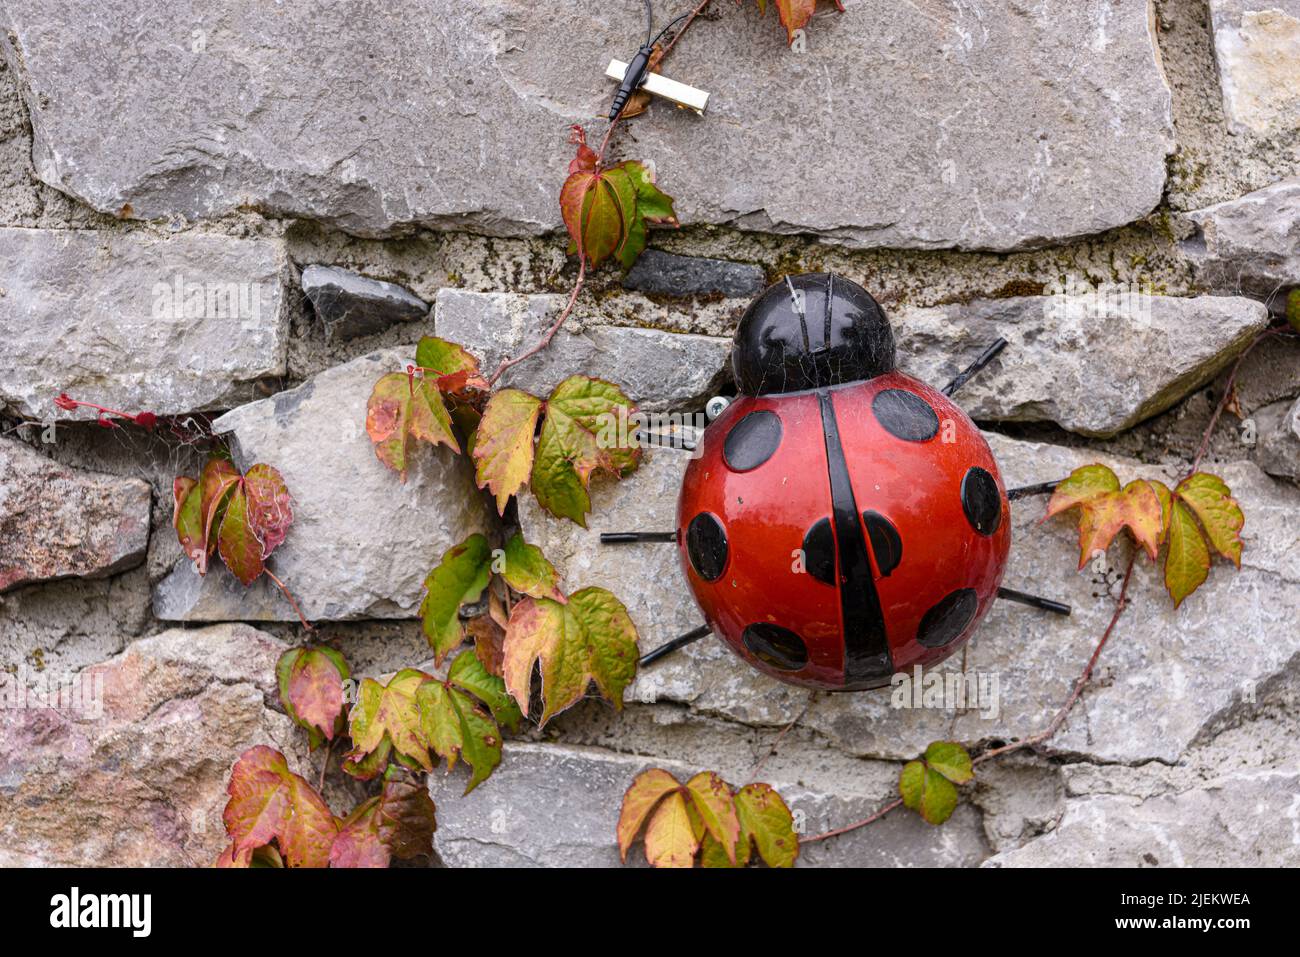 Ladybird garden ornament on a stone wall in a garden. Stock Photo